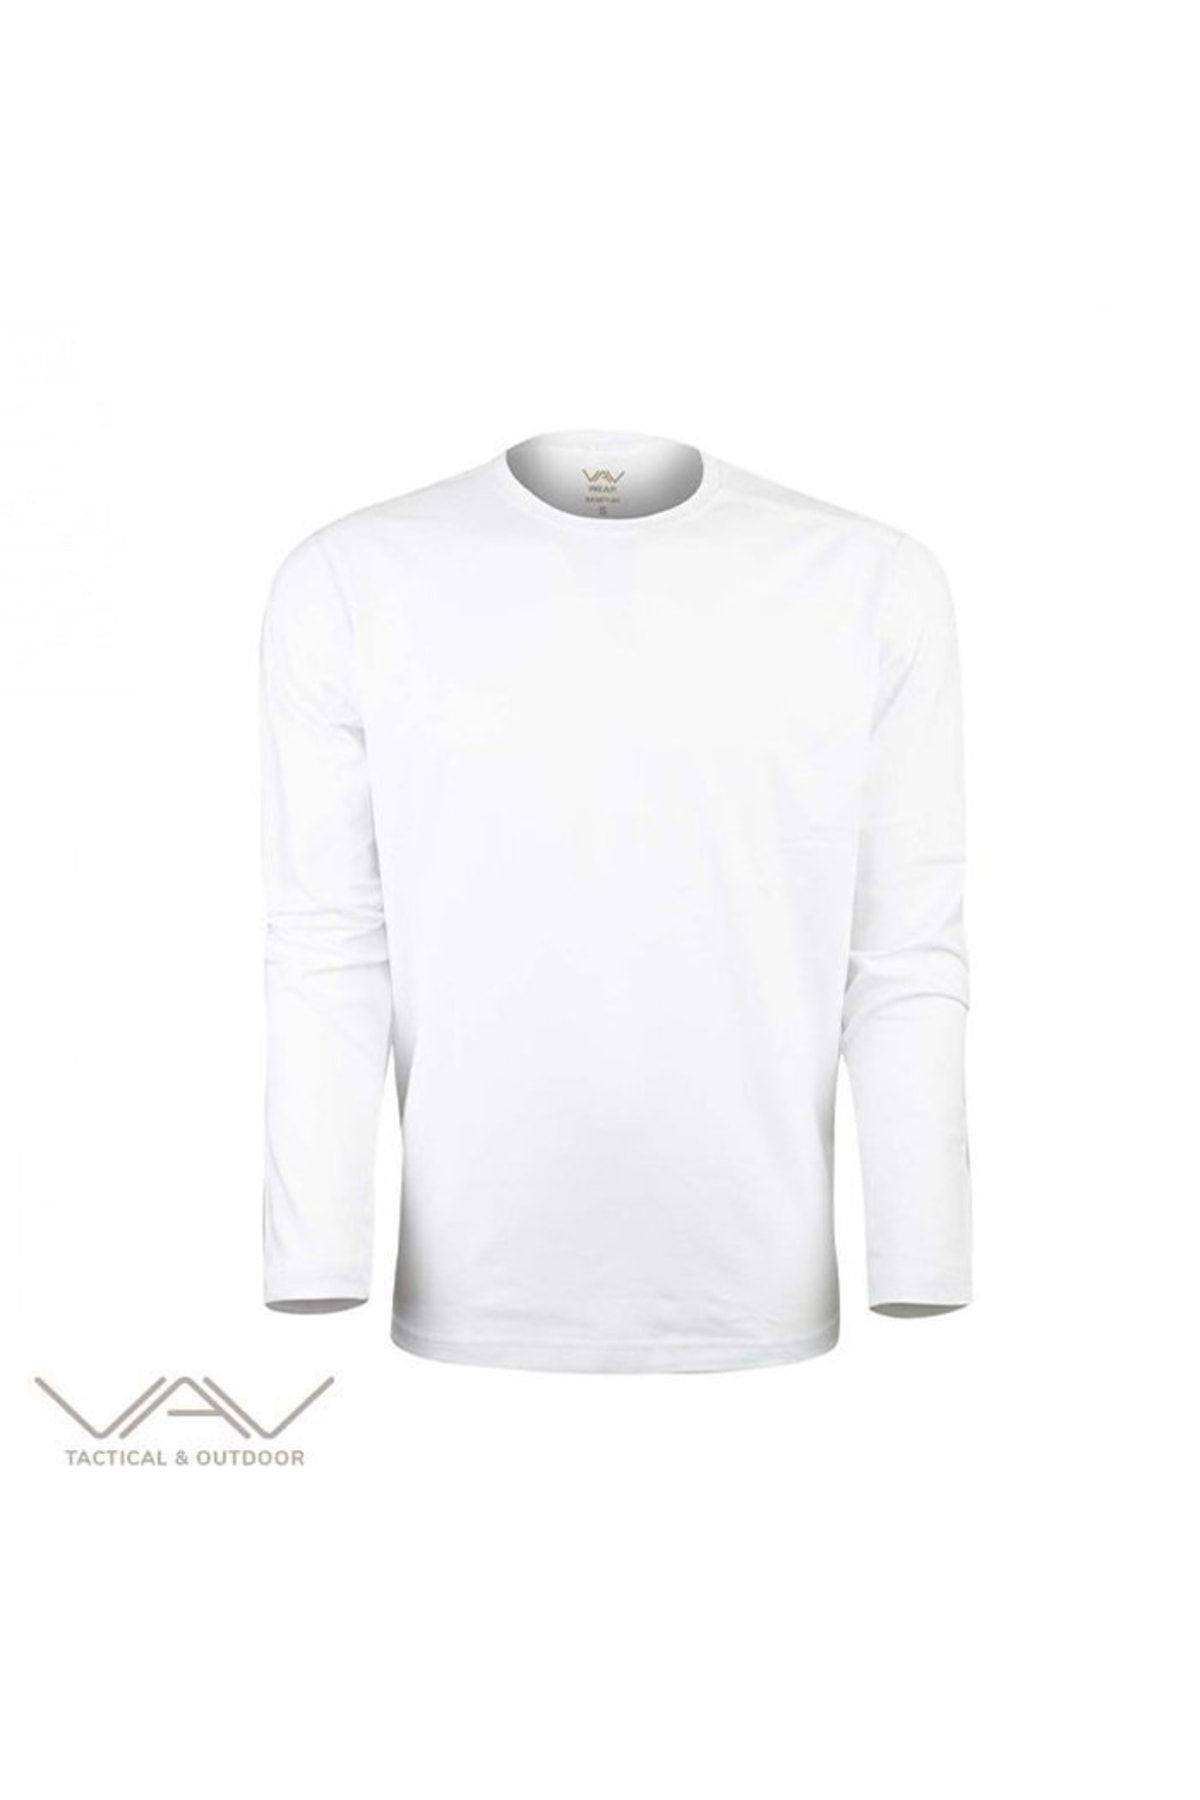 VAV WEAR Vav Baseti-04 Uzun Kol Sweatshirt Beyaz M